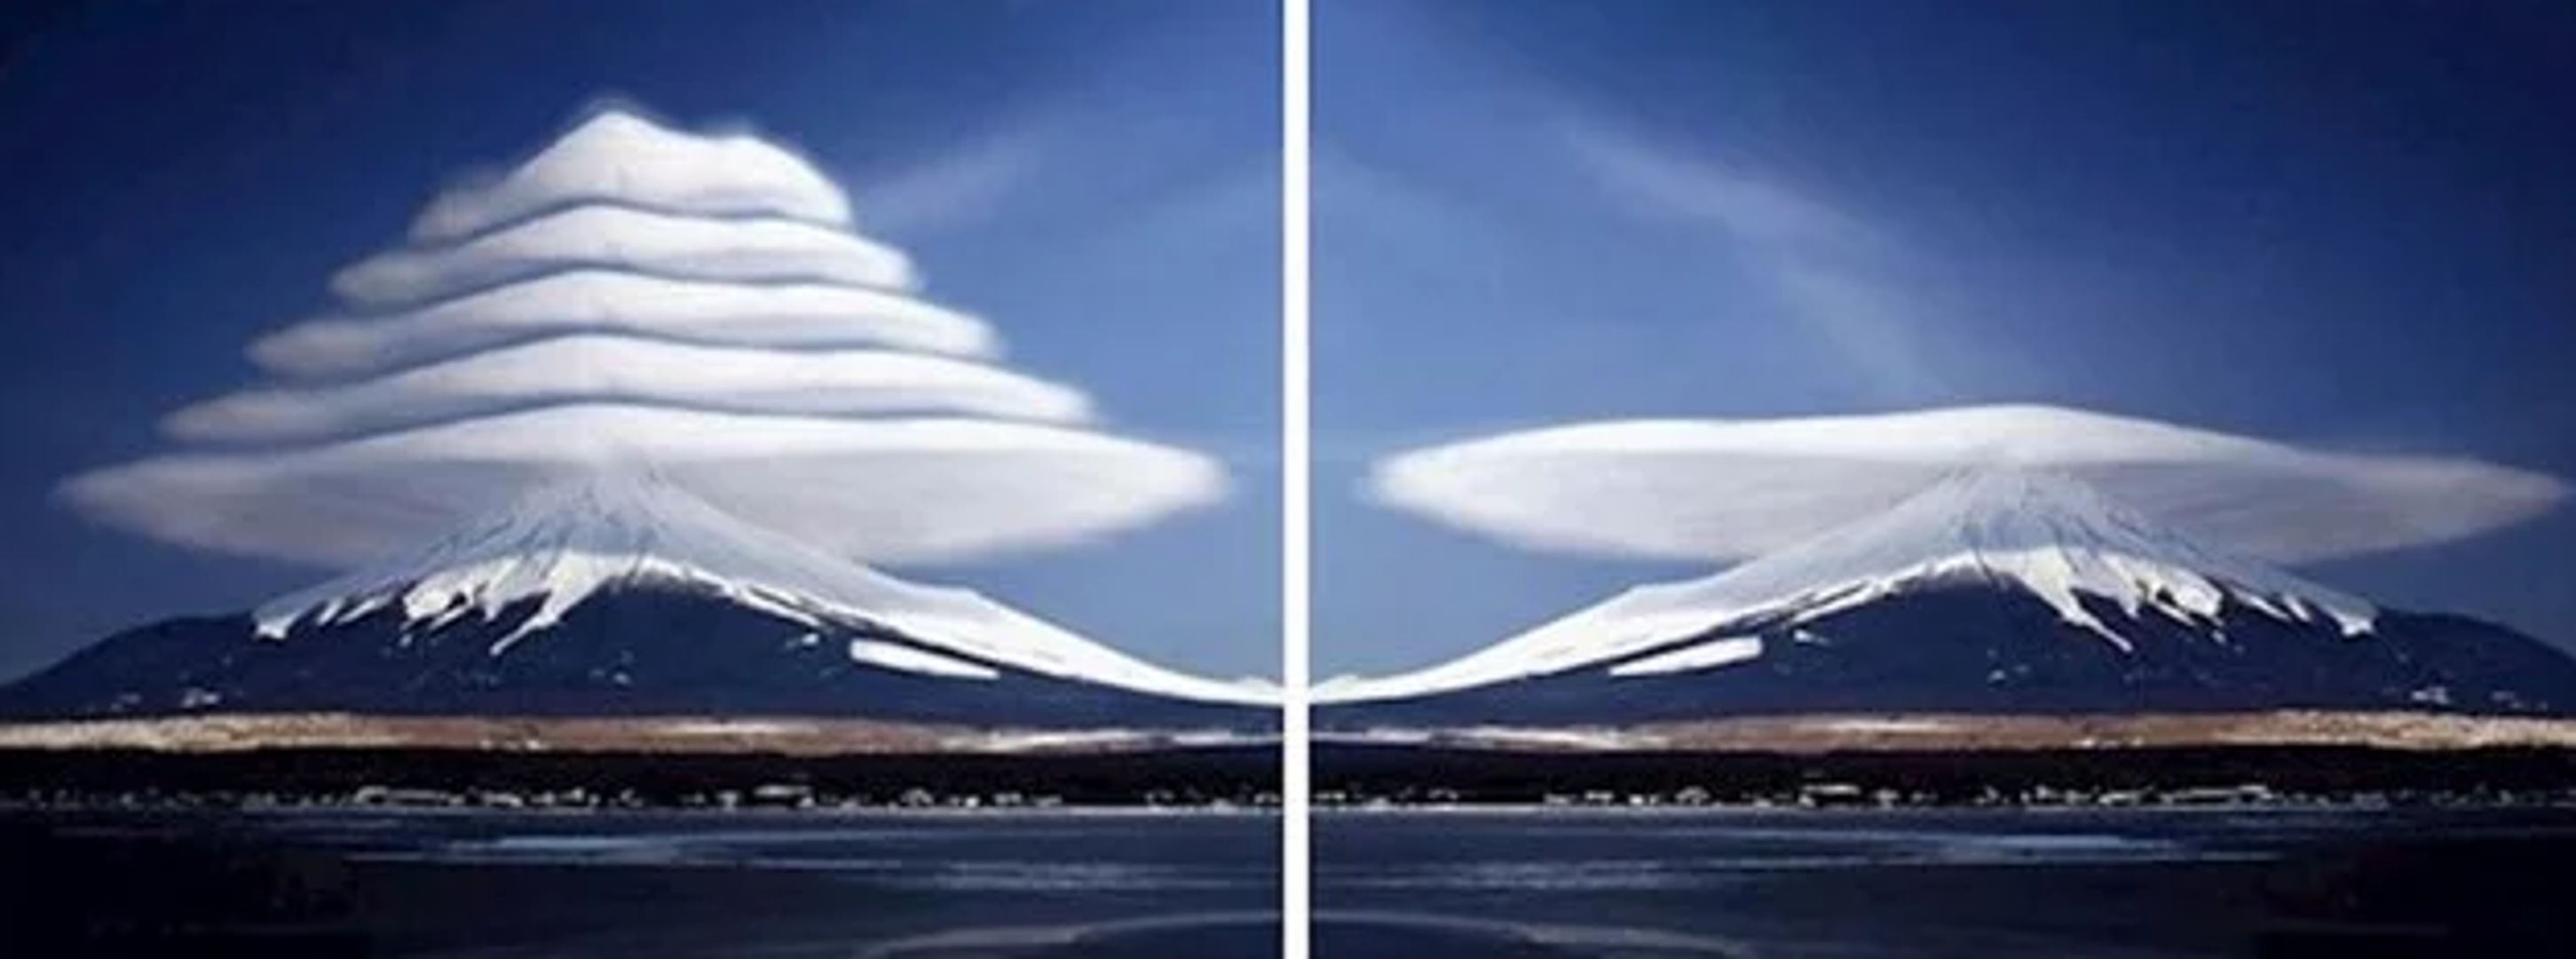 Ljudi su fascinirani ovim 'neobičnim' oblakom do te mjere da su ovu fotografiju koristili za zaslon mobitela i kompjutora. Mnogi su ostali razočarani kada su shvatili da je u pitanju montaža.